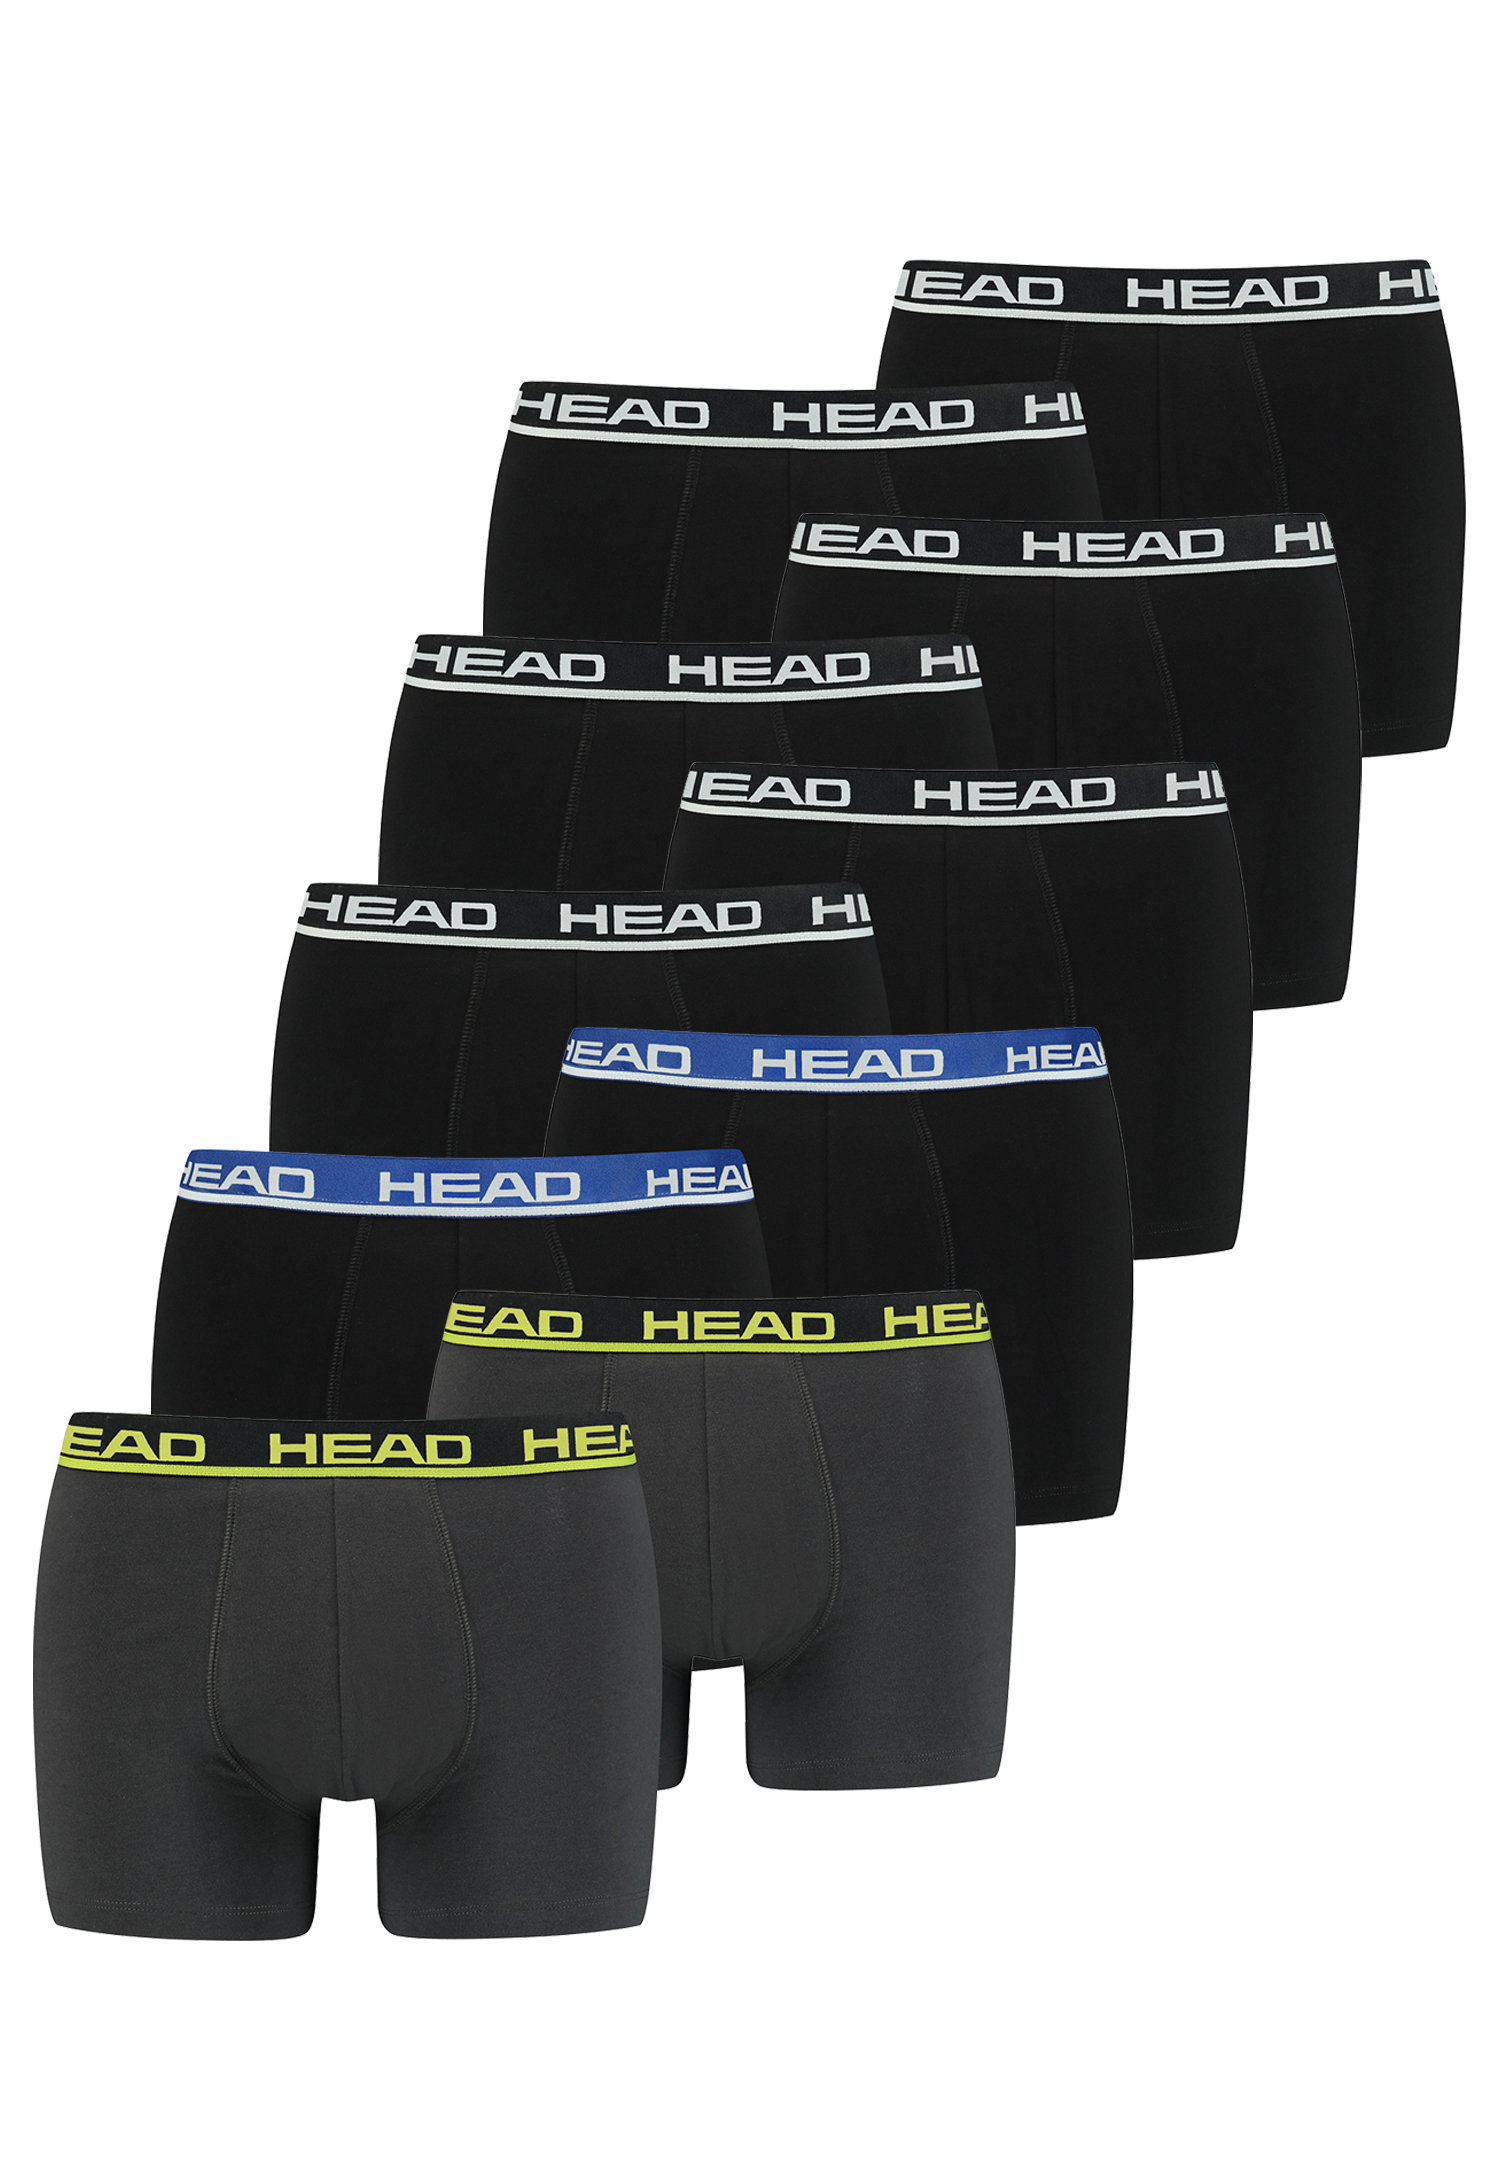 HEAD Herren Boxershorts Unterhosen Unterwäsche 10P (Black/Black Blue/Phantom Lime, XL)